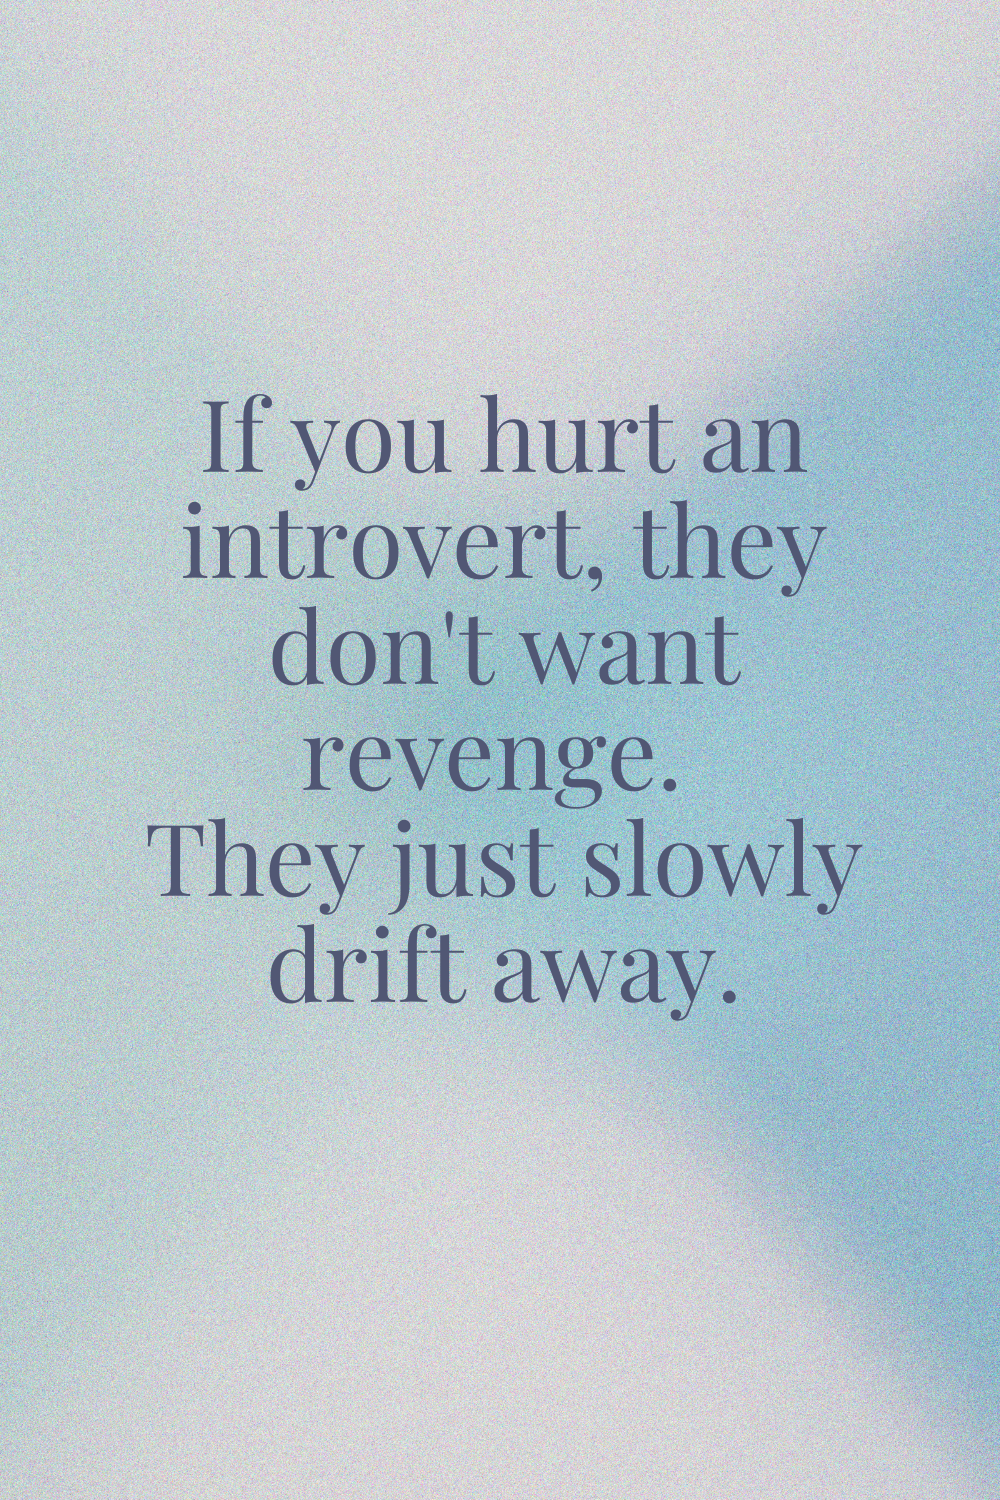 Hurt an Introvert